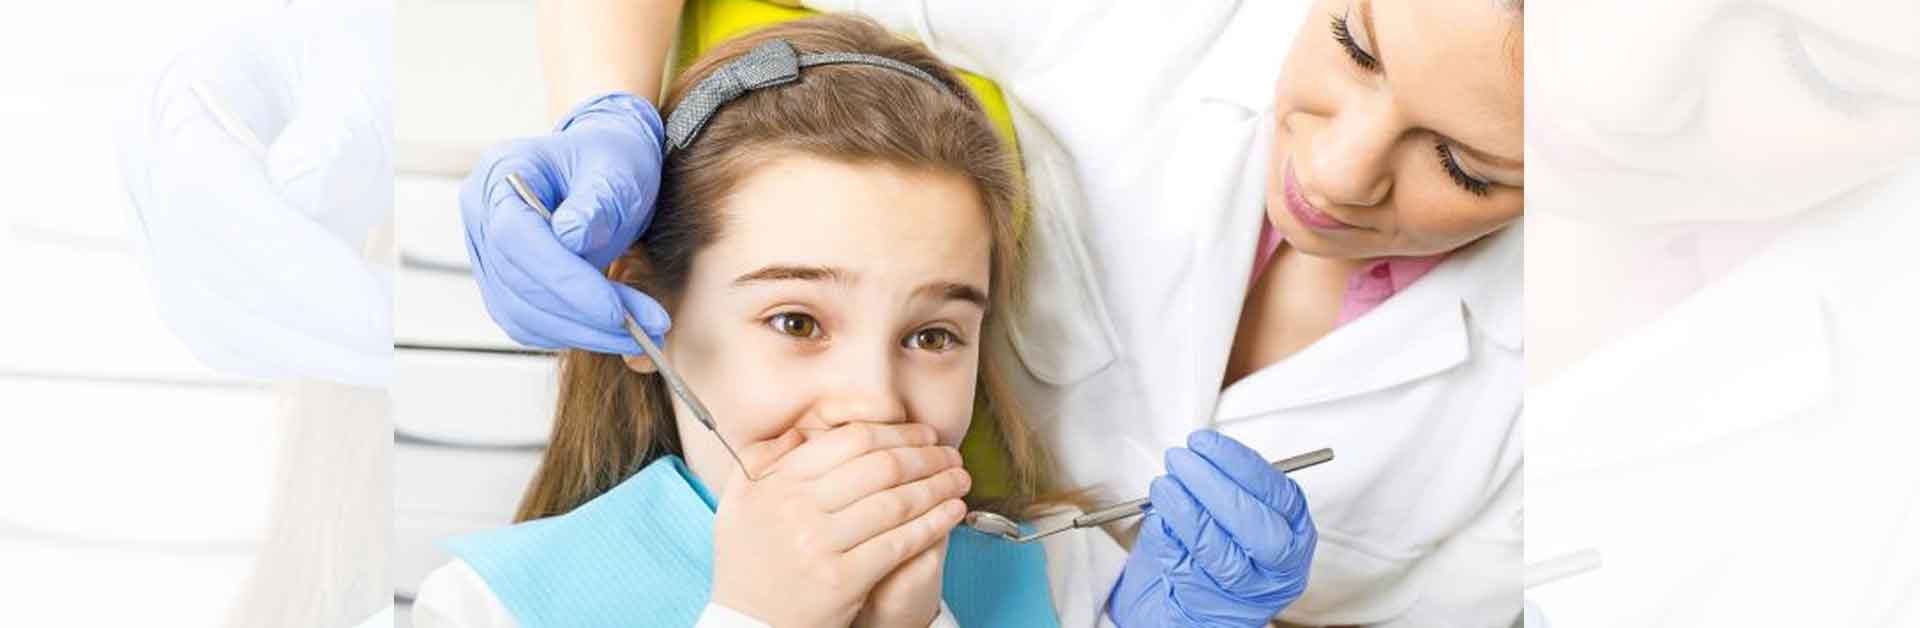 Child dental fear